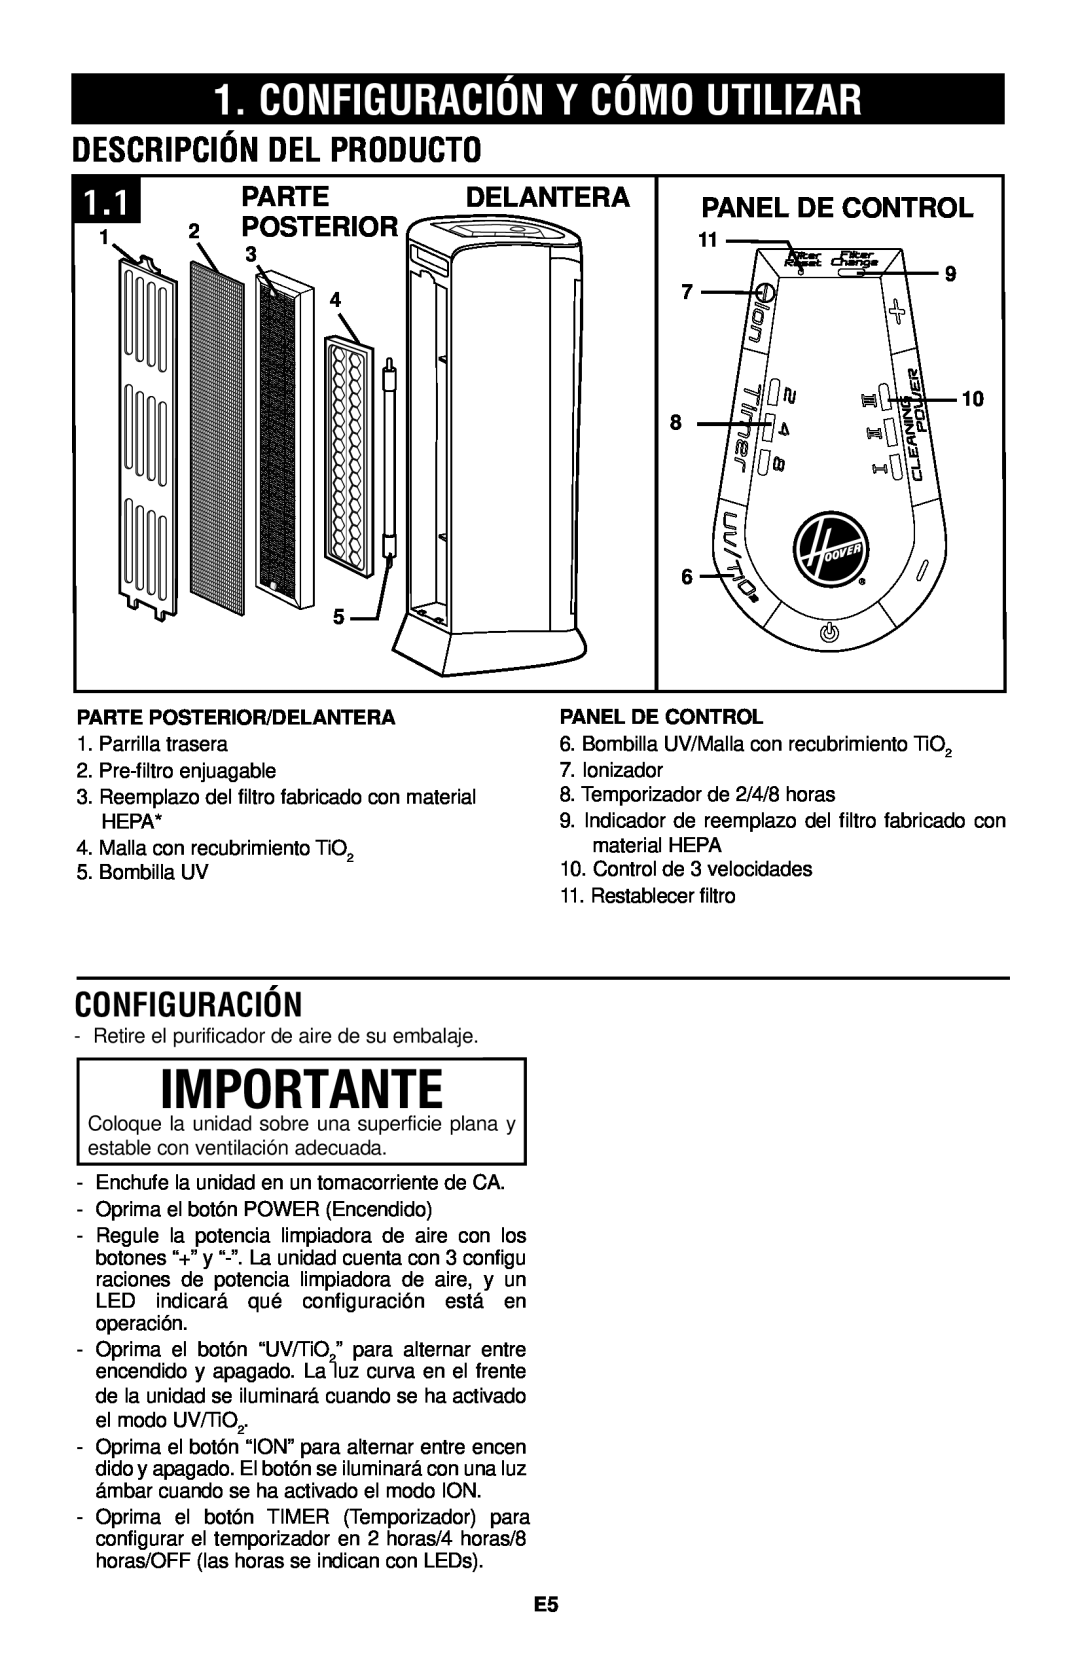 Hoover Air Cleaner Importante, Configuración Y Cómo Utilizar, Descripción Del Producto, Parte, Delantera, Panel De Control 